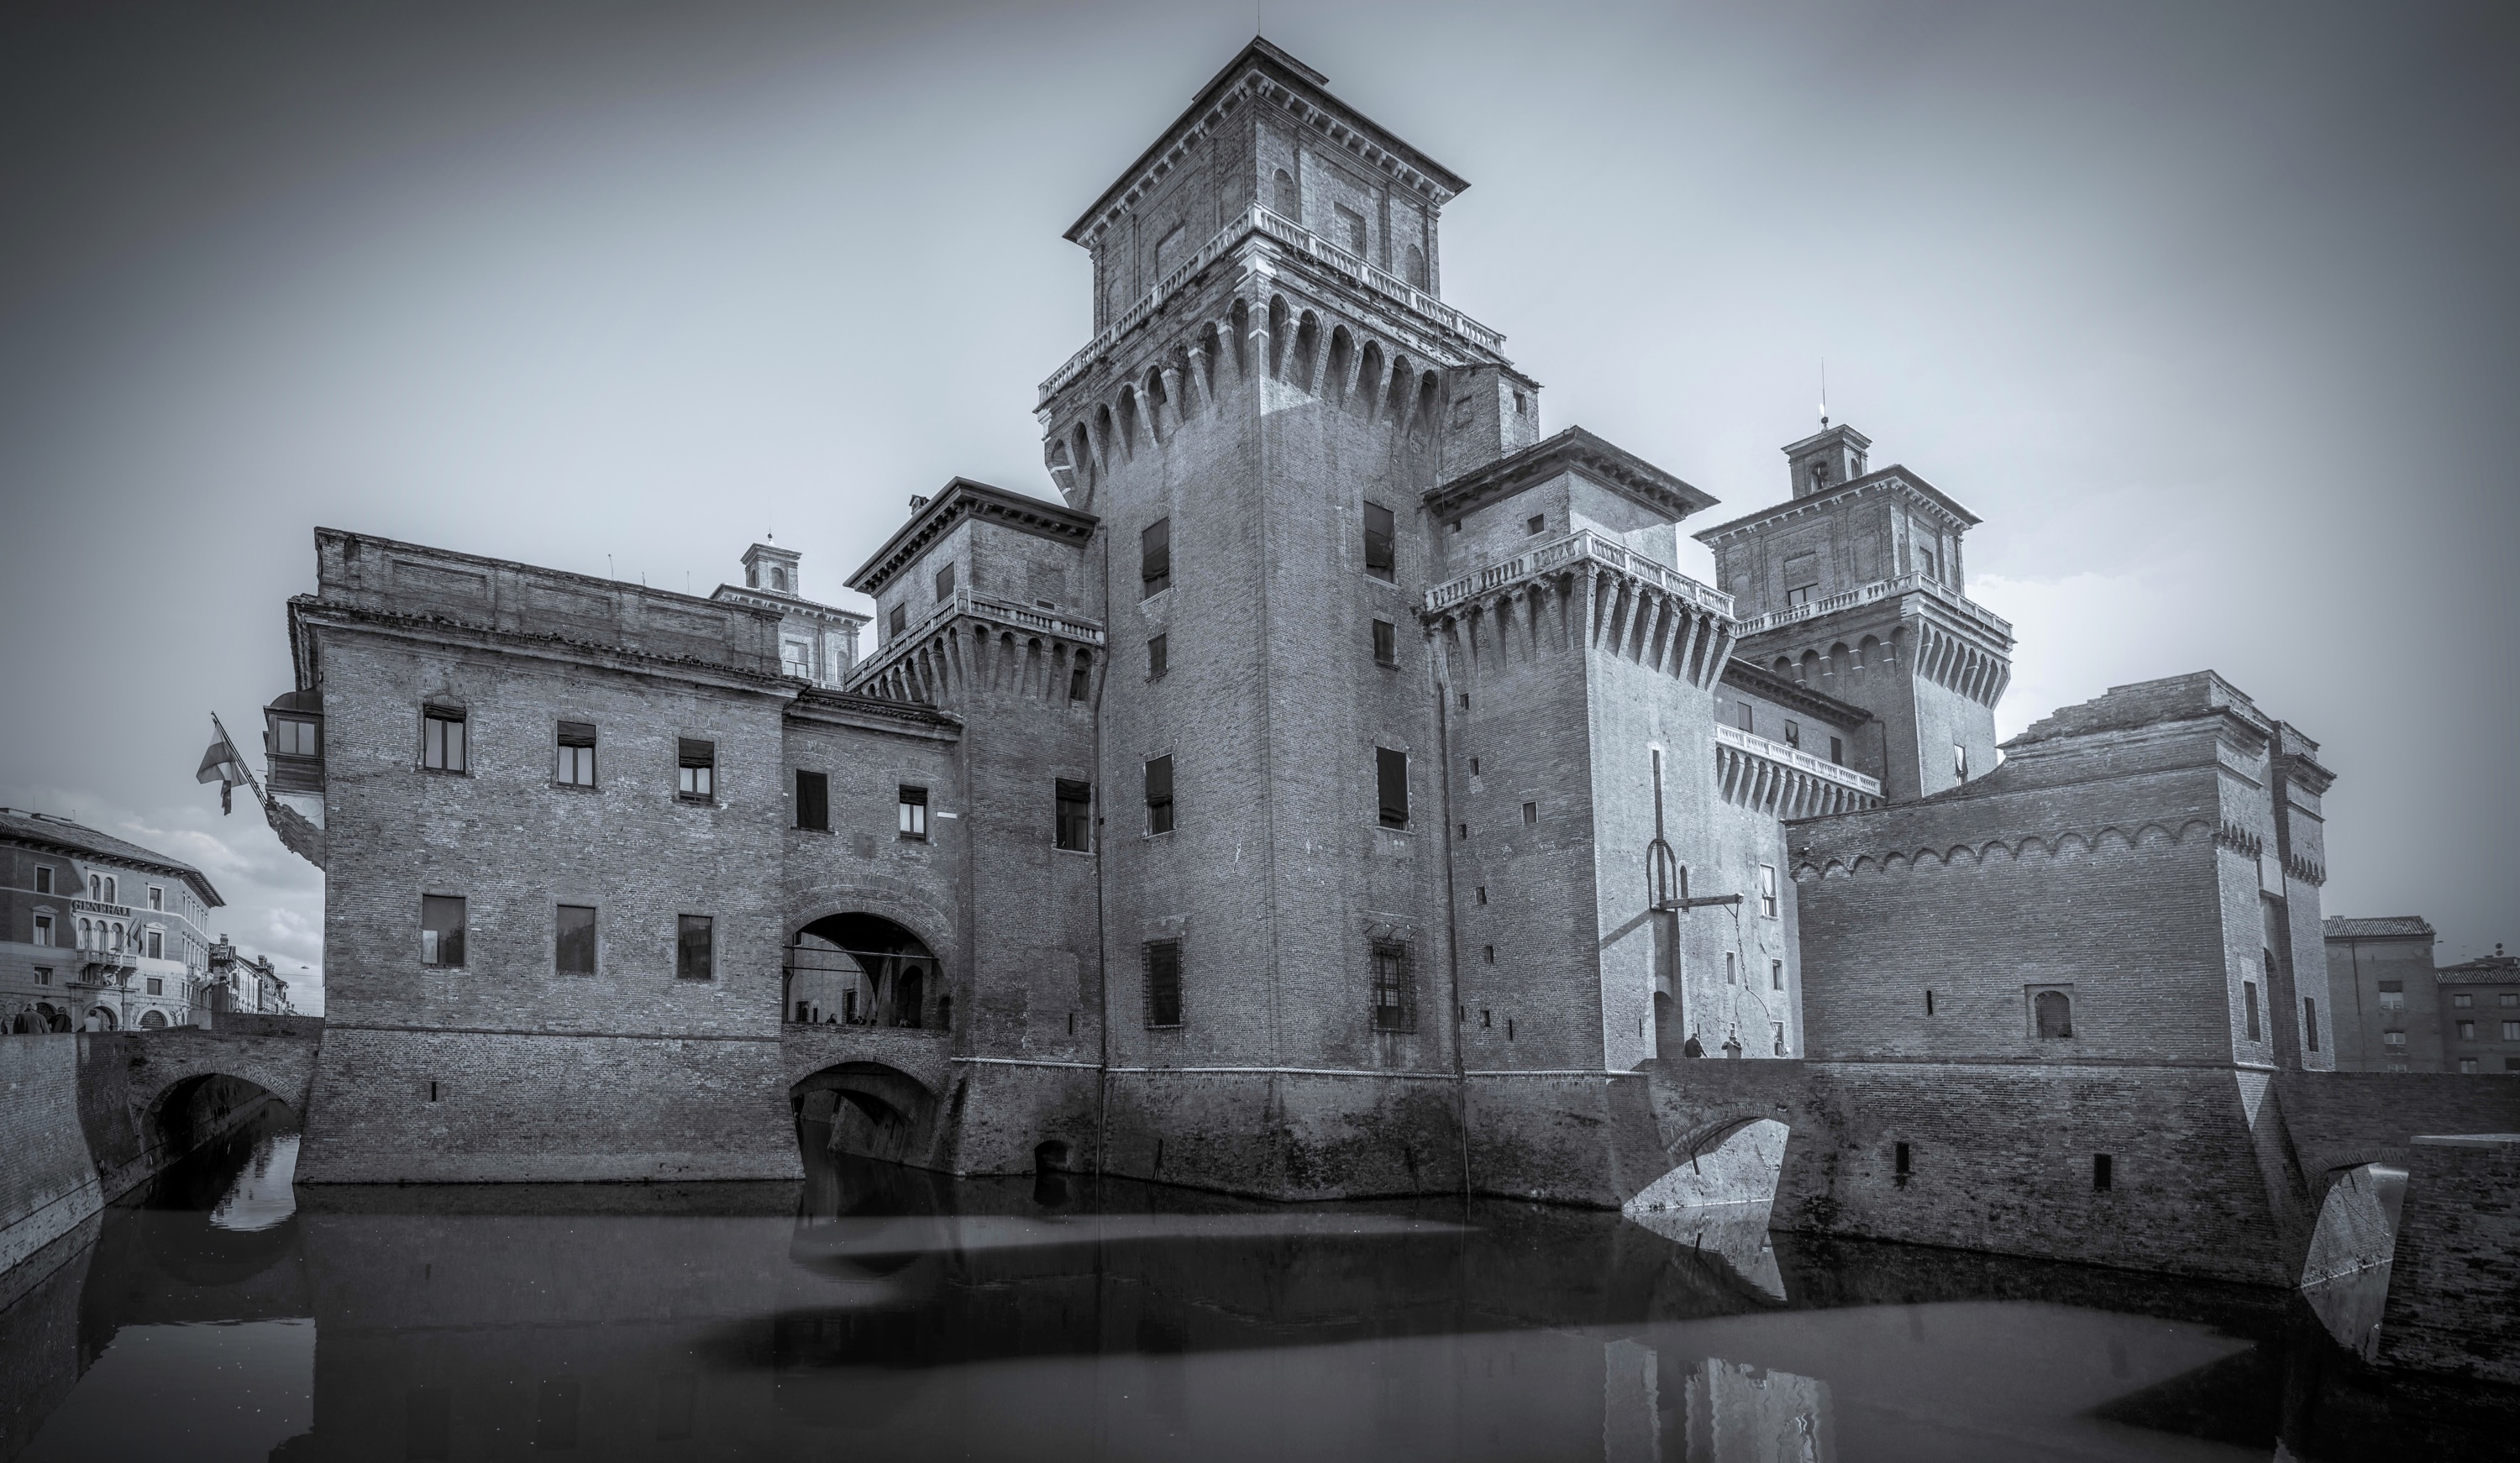 photo: https://upload.wikimedia.org/wikipedia/commons/f/f6/Castello_Estense_---_Ferrara.jpg